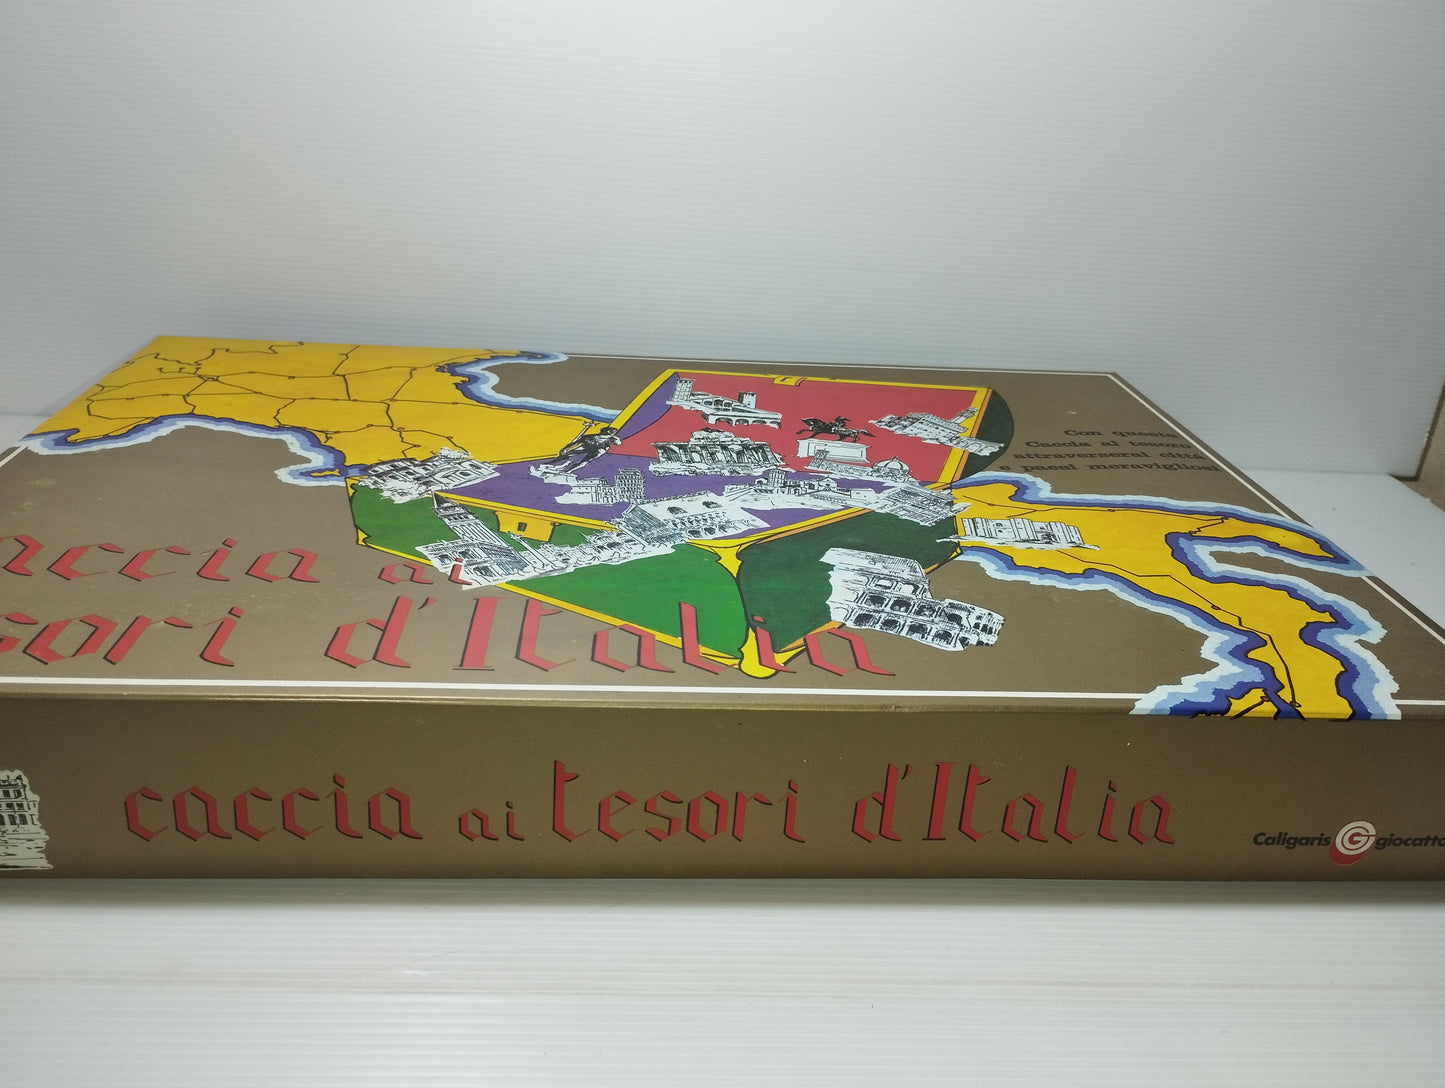 Gioco Caccia ai Tesori D'Italia realizzato dalla Caligaris Giocattoli.